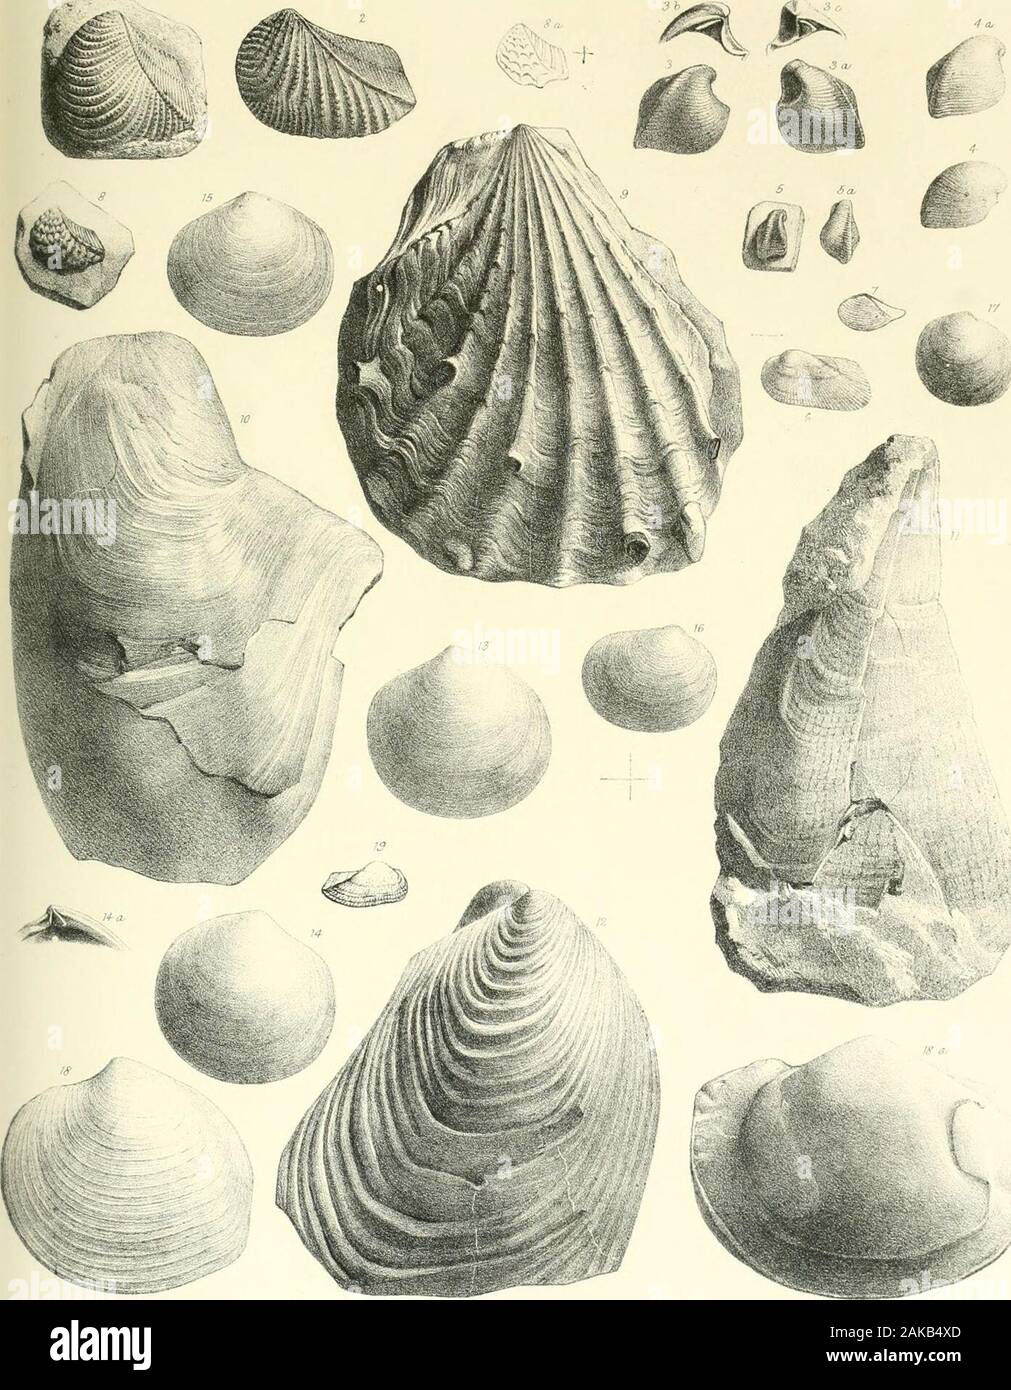 A monograph of the Mollusca from the Great Oolite chiefly from Minchinhampton and the coast of Yorkshire . TAB. VI. Fig. 1. Trigonia Phillipsii, p. 62. 2. „ duplicata, p. 60. 3, 3 a, b, c. Opis lunulatus, p. 80. 4, 4«, b. ,, similis, p. 81.5,5 a. „ Deshayesii, p. 81. 6. Area pulchra, p. 44. 7. Leda mucronata, p. 53. 8. 8 a. Trigonia imbricata, p. 63. 9. Lima pectiniformis, p. 26. 10. Gervillia radians, p. 23. 11. Pinna cuneata, p. 32. 12. Inoceramus obliquus, jy. 24. 13. Lucina crassa, p. 68. 14. 14 c. „ rotundata, p. 68. 15. „ Bellona, var. depressa, p. 67. 16. ,; despecta,jo. 69. 17. „ ,, va Stock Photo